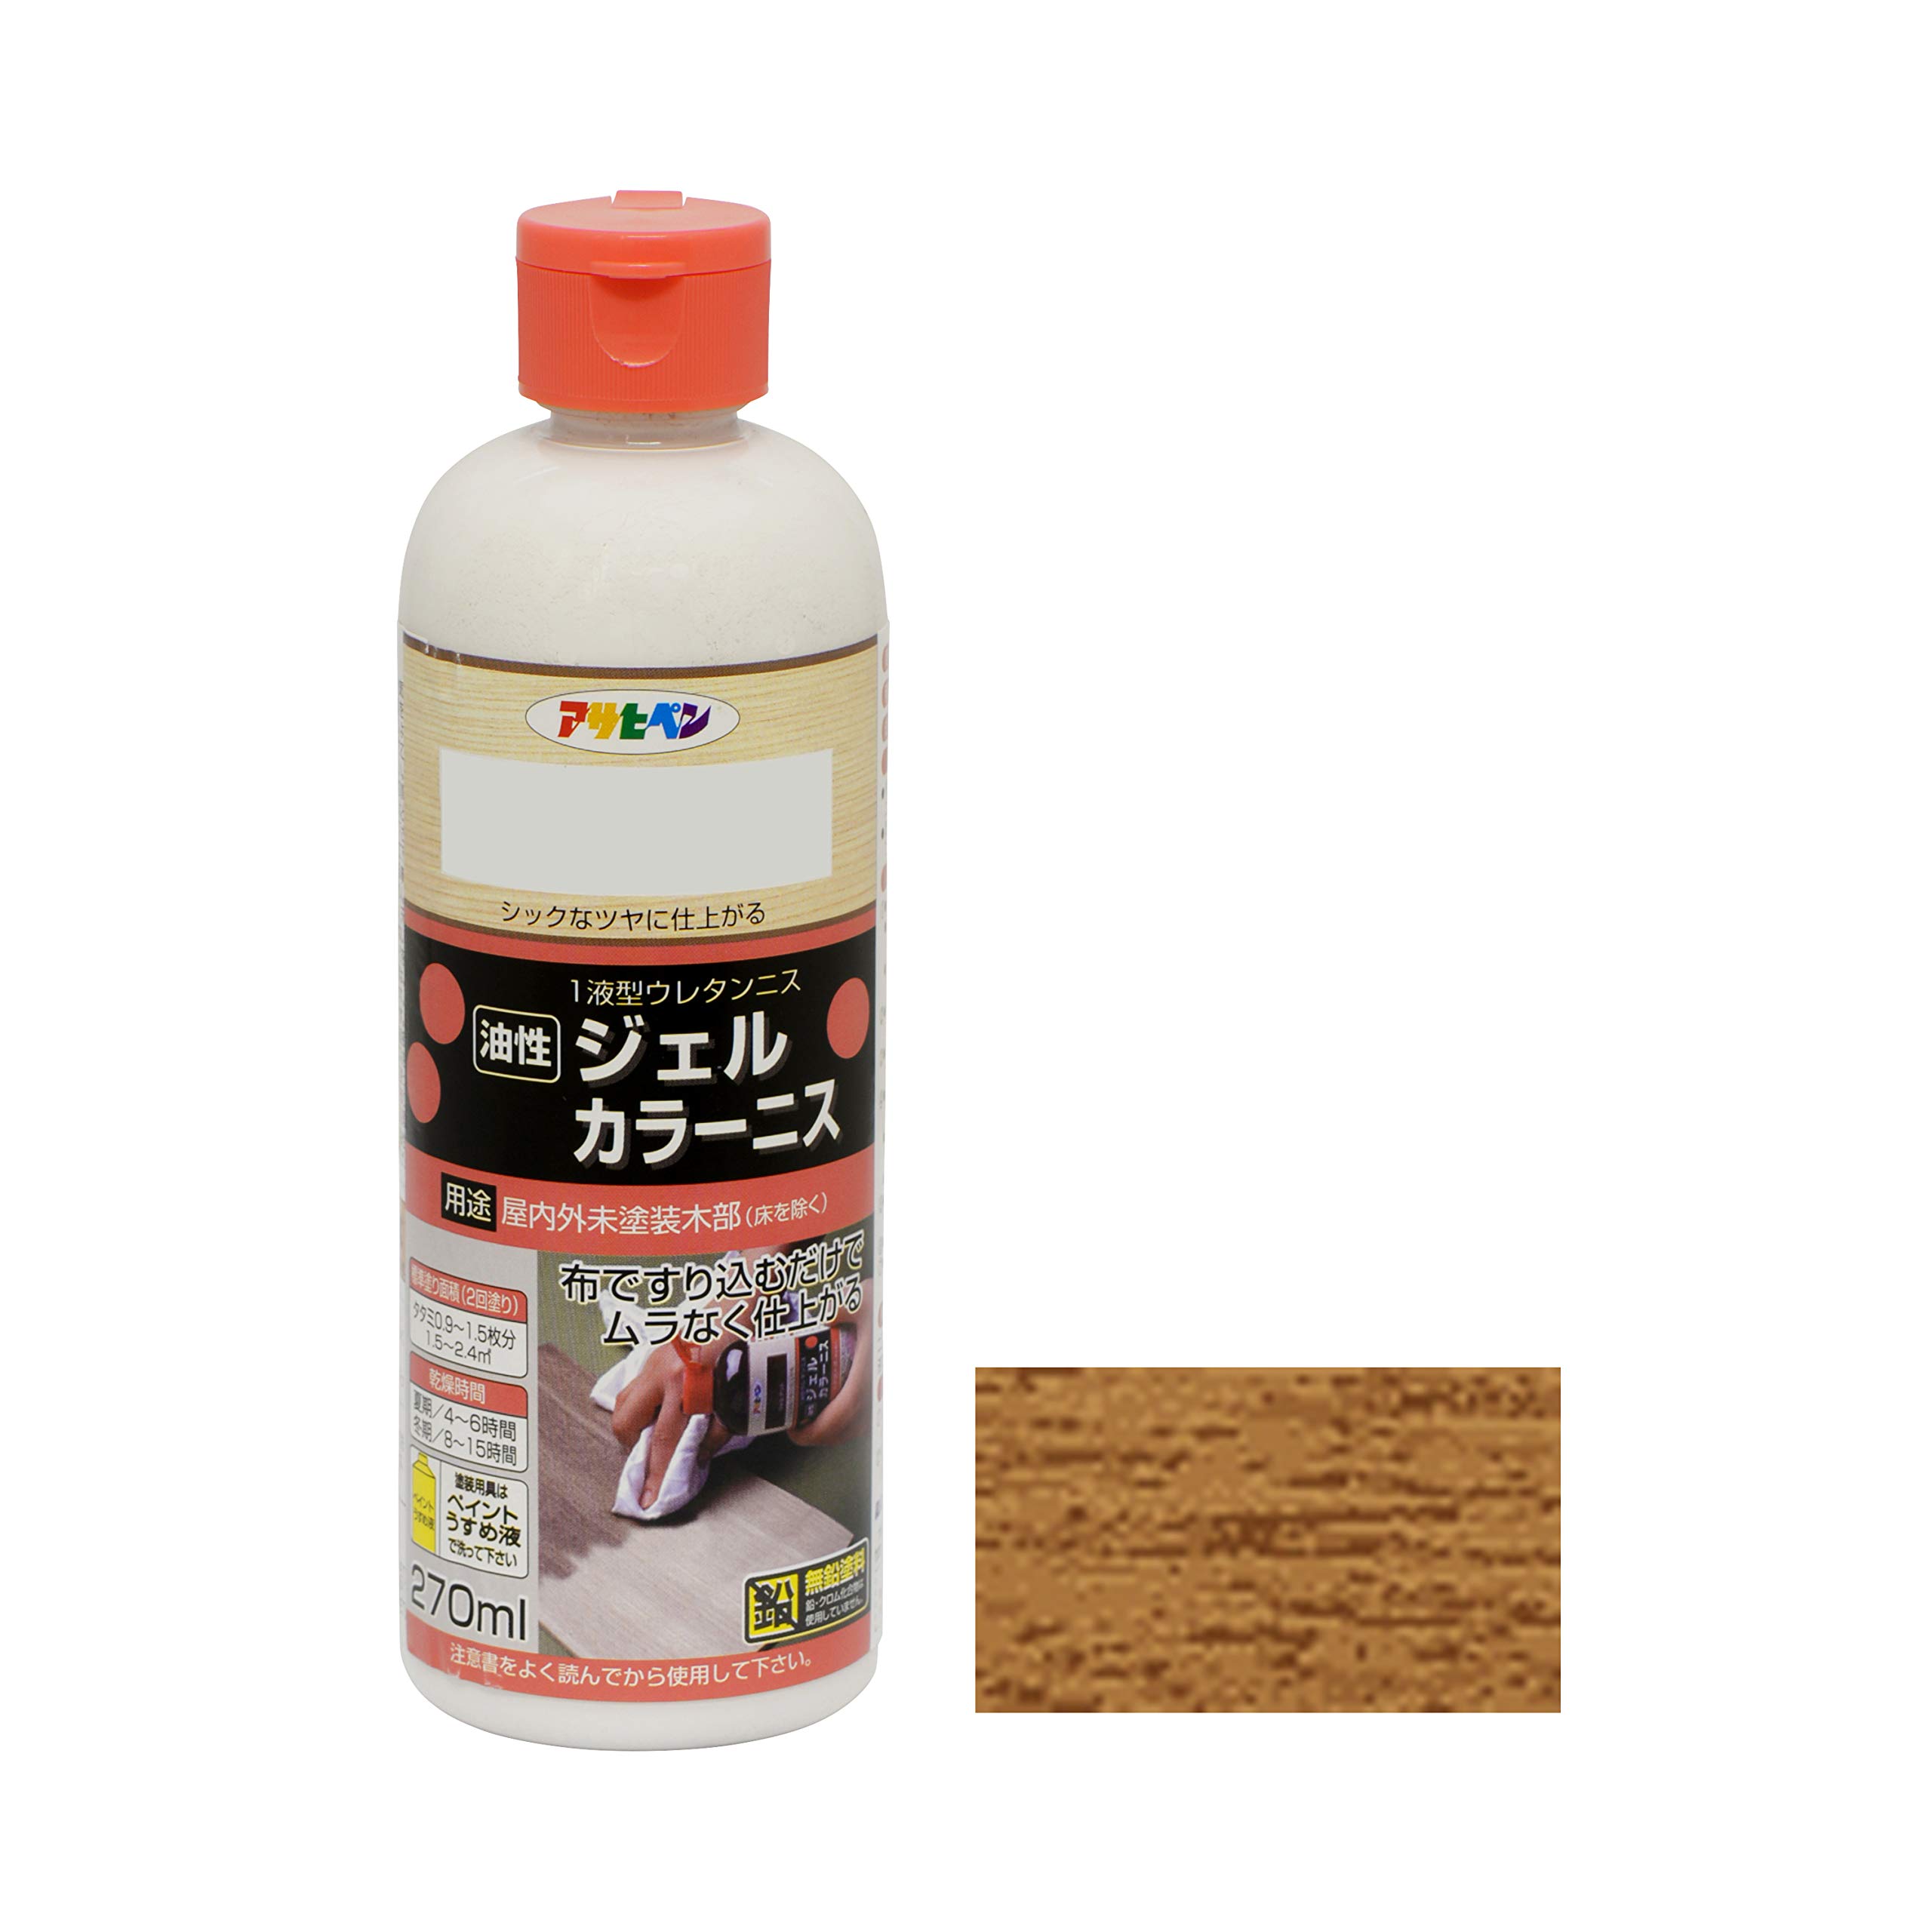  Asahi авторучка маслянистость гель цвет лак 270mL дуб 